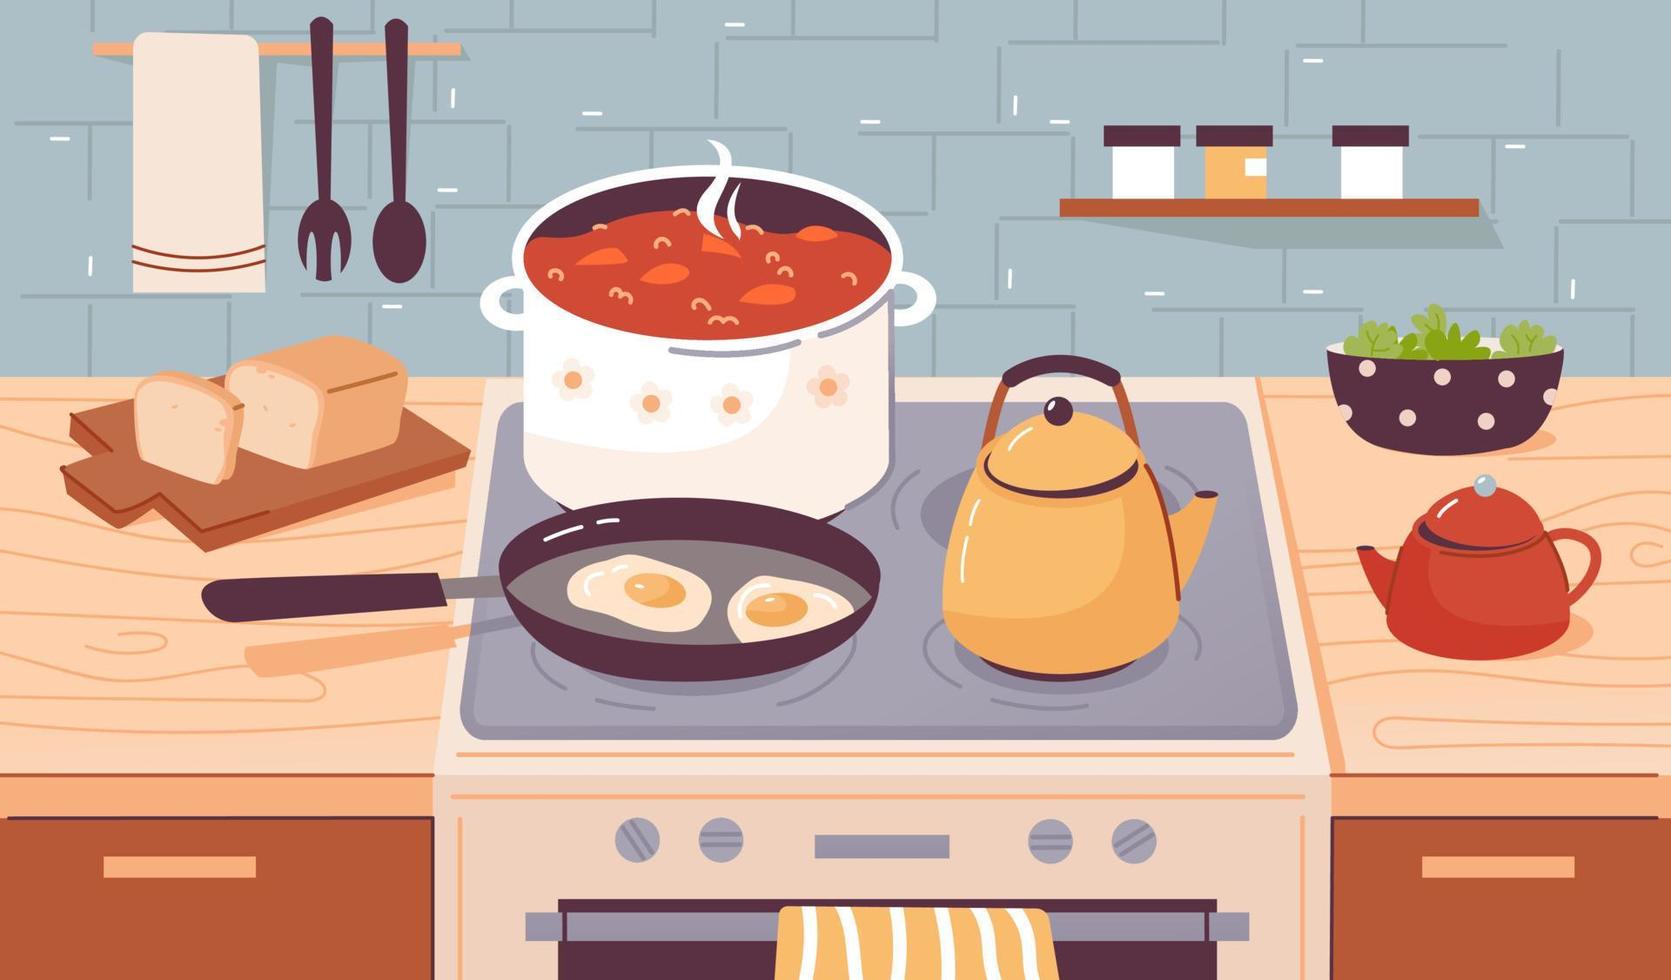 cuire des aliments, faire bouillir de l'eau, faire mijoter et frire des plats sur la cuisinière. ustensiles de cuisine à l'intérieur de la cuisine de la maison. illustration vectorielle plane vecteur